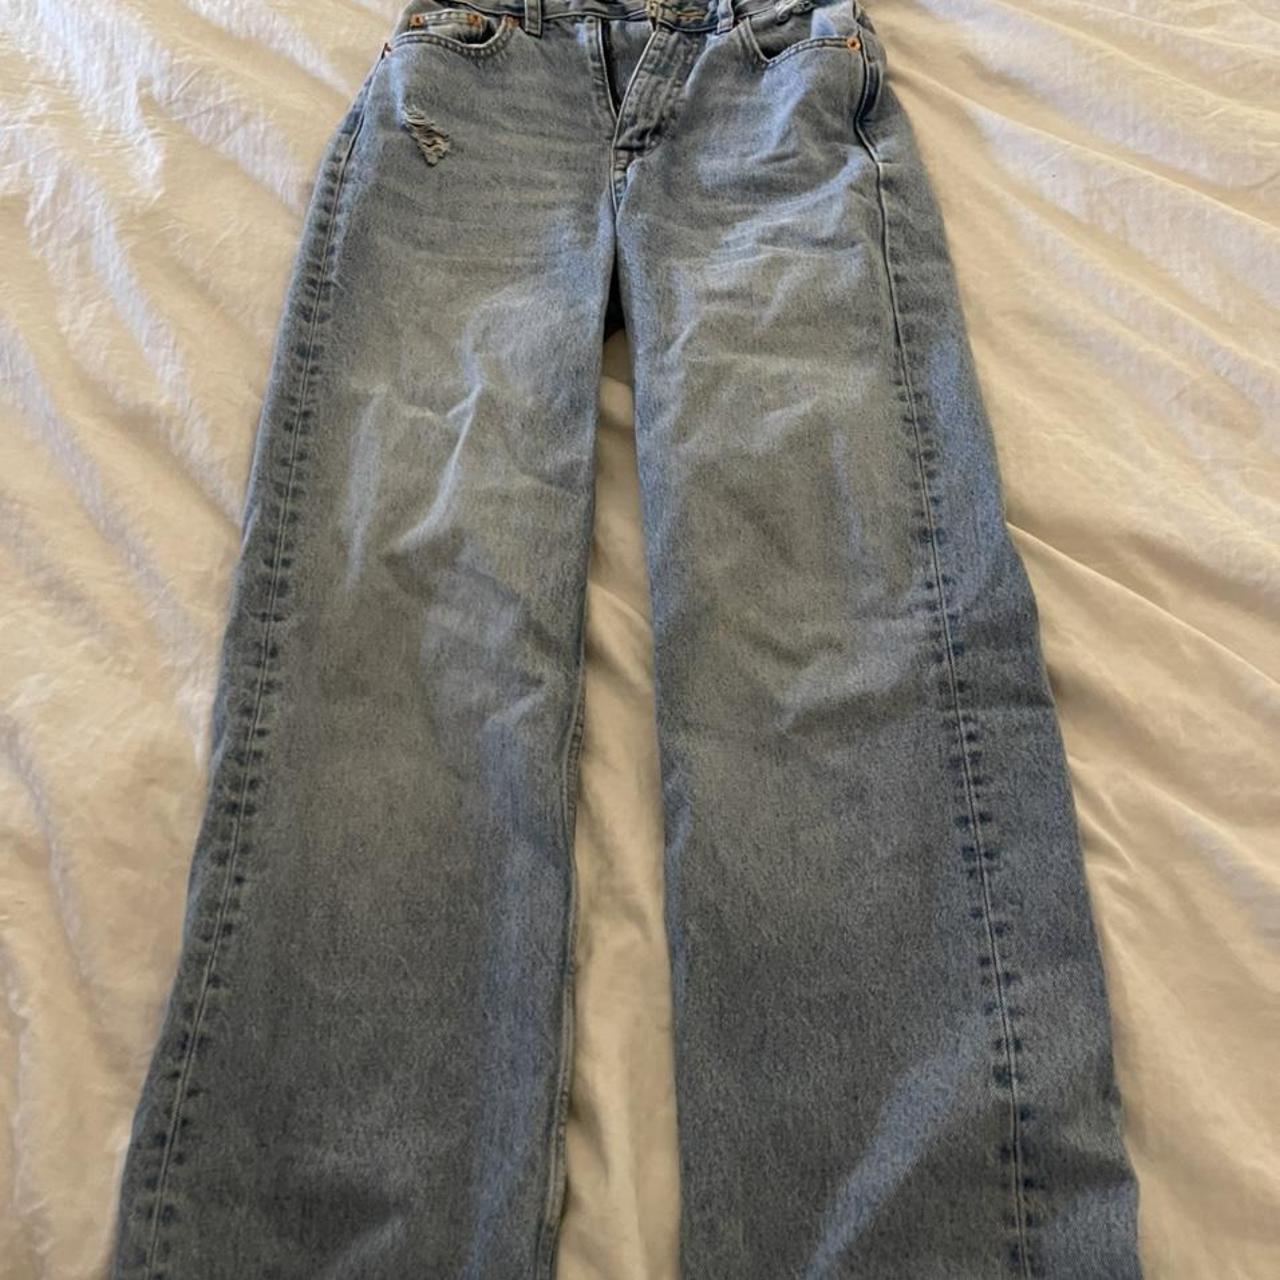 Baggy jeans zara size 34 - Depop